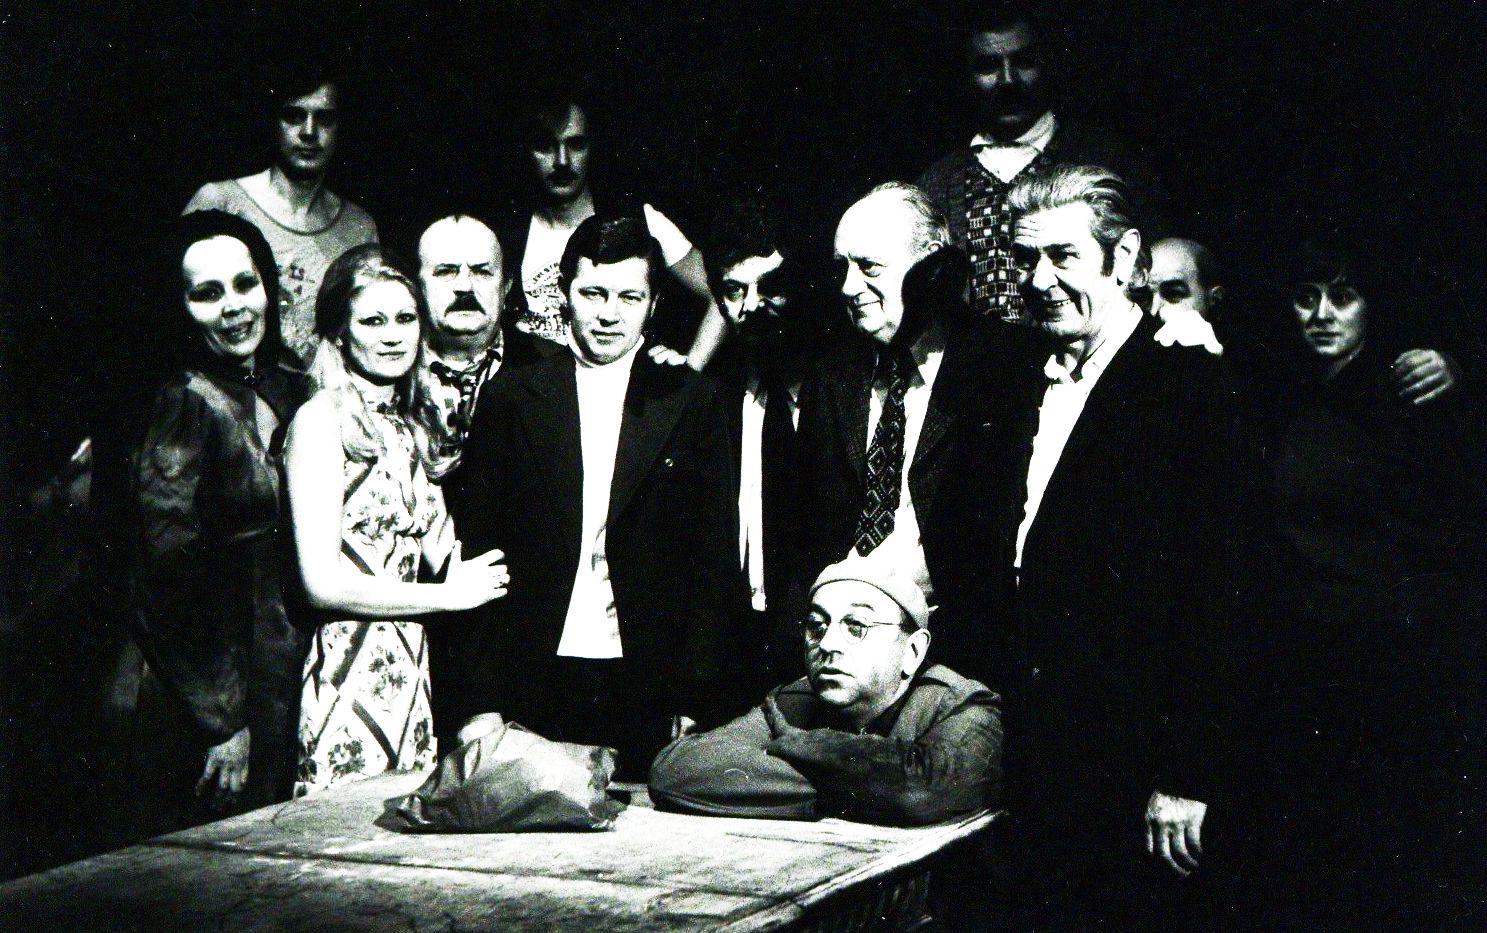 Csiki László az Öreg ház című művének kolozsvári előadásán Harag György rendező és a darabban szereplő színészek társaságában (1978)